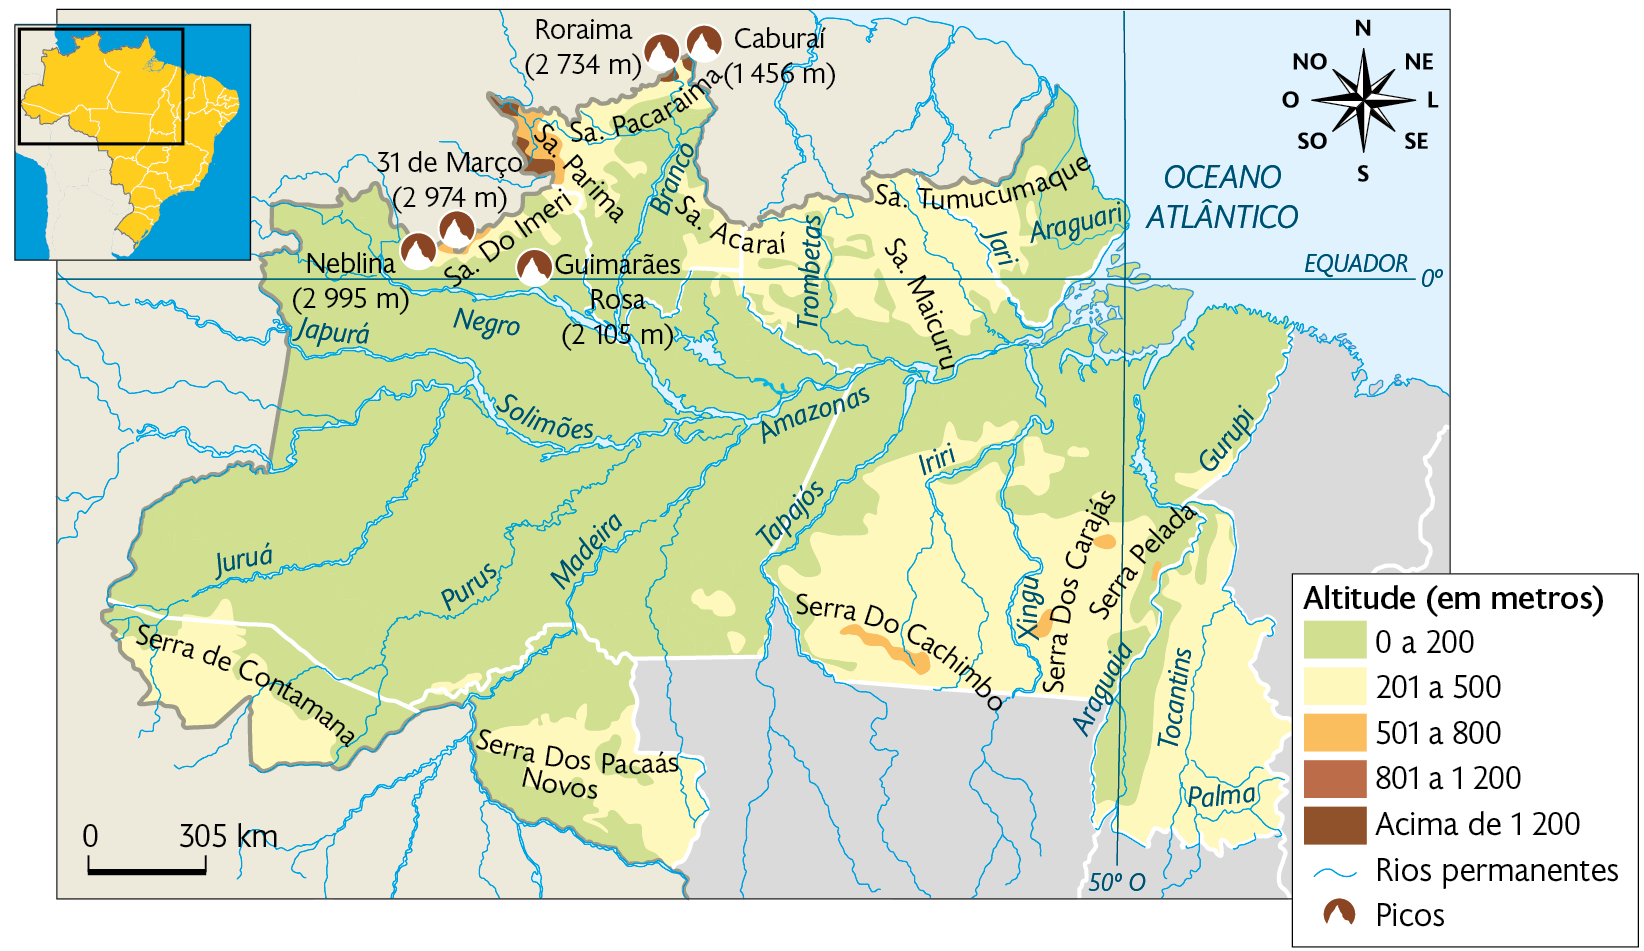 Mapa. Relevo e hidrografia da Região Norte. Altitude (em metros). 0 a 200 metros: Amazonas e de Roraima, norte do Pará e Amapá, oeste do Tocantins, norte do Acre e Rondônia. 201 a 500 metros: noroeste e sul do Pará, noroeste do Amazonas, norte e sudeste de Roraima, sudeste do Amapá, Acre e Rondônia. 501 a 800 metros: noroeste de Roraima, pequenas áreas no norte do Amazonas e no sul do Pará. 801 a 1200 metros: pequenas áreas no noroeste de Roraima e norte do Amazonas. Acima de 1200 metros: noroeste de Roraima e extremo norte do Amazonas. Rios permanentes: Juruá, Solimões, Negro, Branco, Trombetas, Amazonas, Tapajós, Madeira, Purus, Iriri entre outros. Picos: Neblina (2995 metros), 31 de Março (2974 metros), Guimarães (2105 metros), Roraima (2734 metros), Caburaí (1456 metros). No canto superior esquerdo, mapa de localização destacando a região descrita, no canto superior direito, a rosa dos ventos e no canto inferior esquerdo, a escala: 305 quilômetros por centímetro.